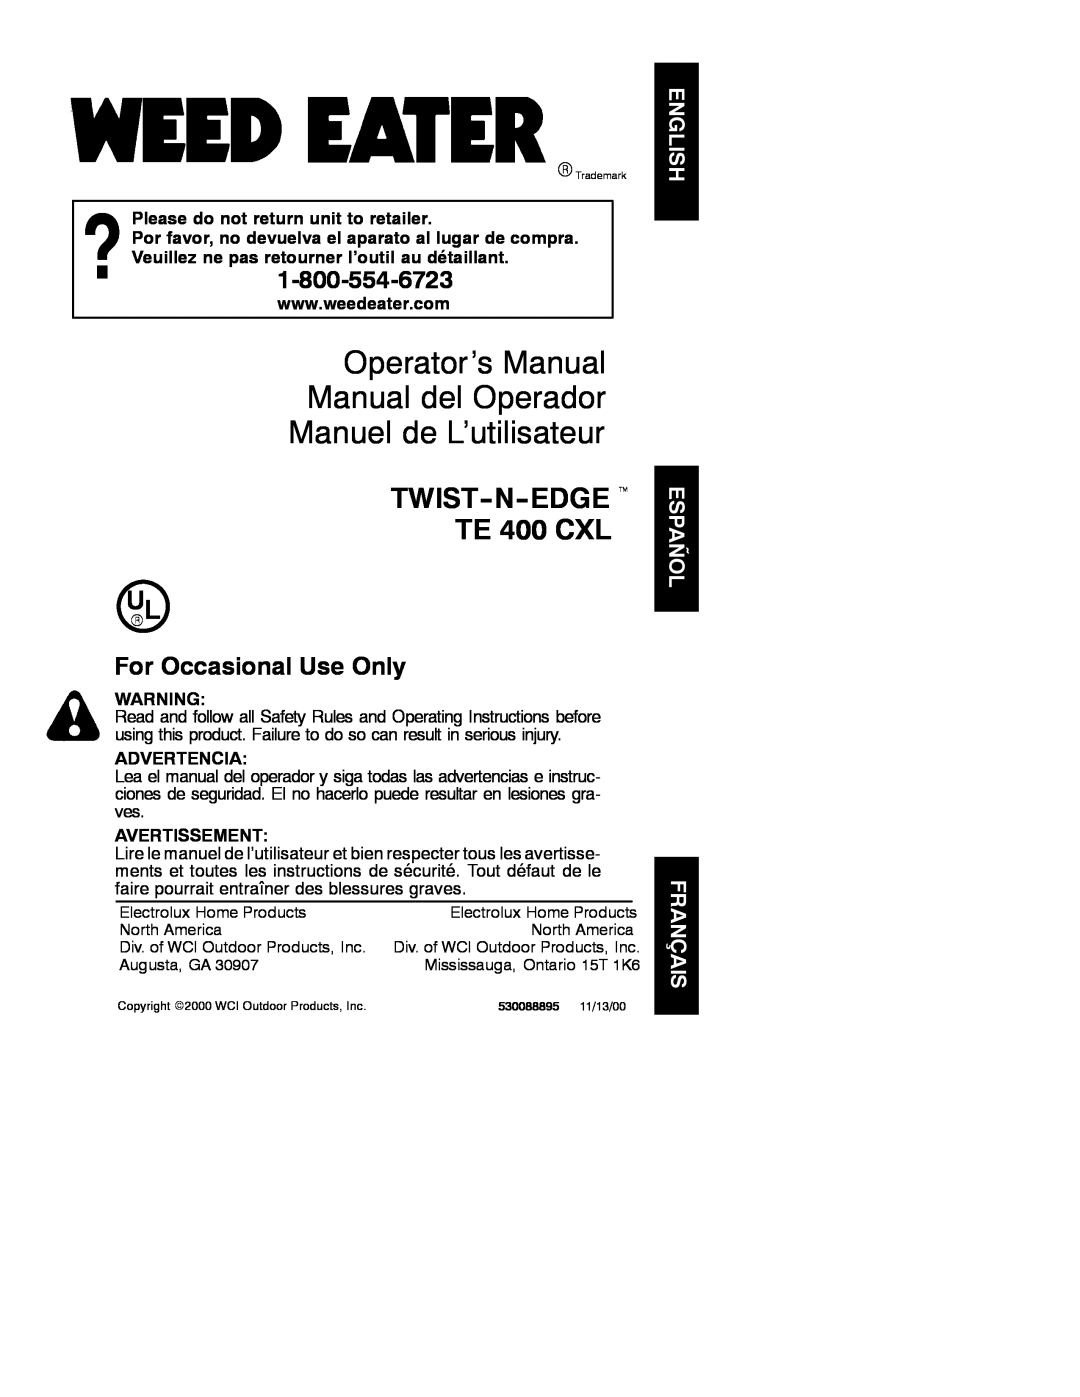 Poulan TE 400 CXL operating instructions Operator’s Manual Manual del Operador Manuel de L’utilisateur, Advertencia 